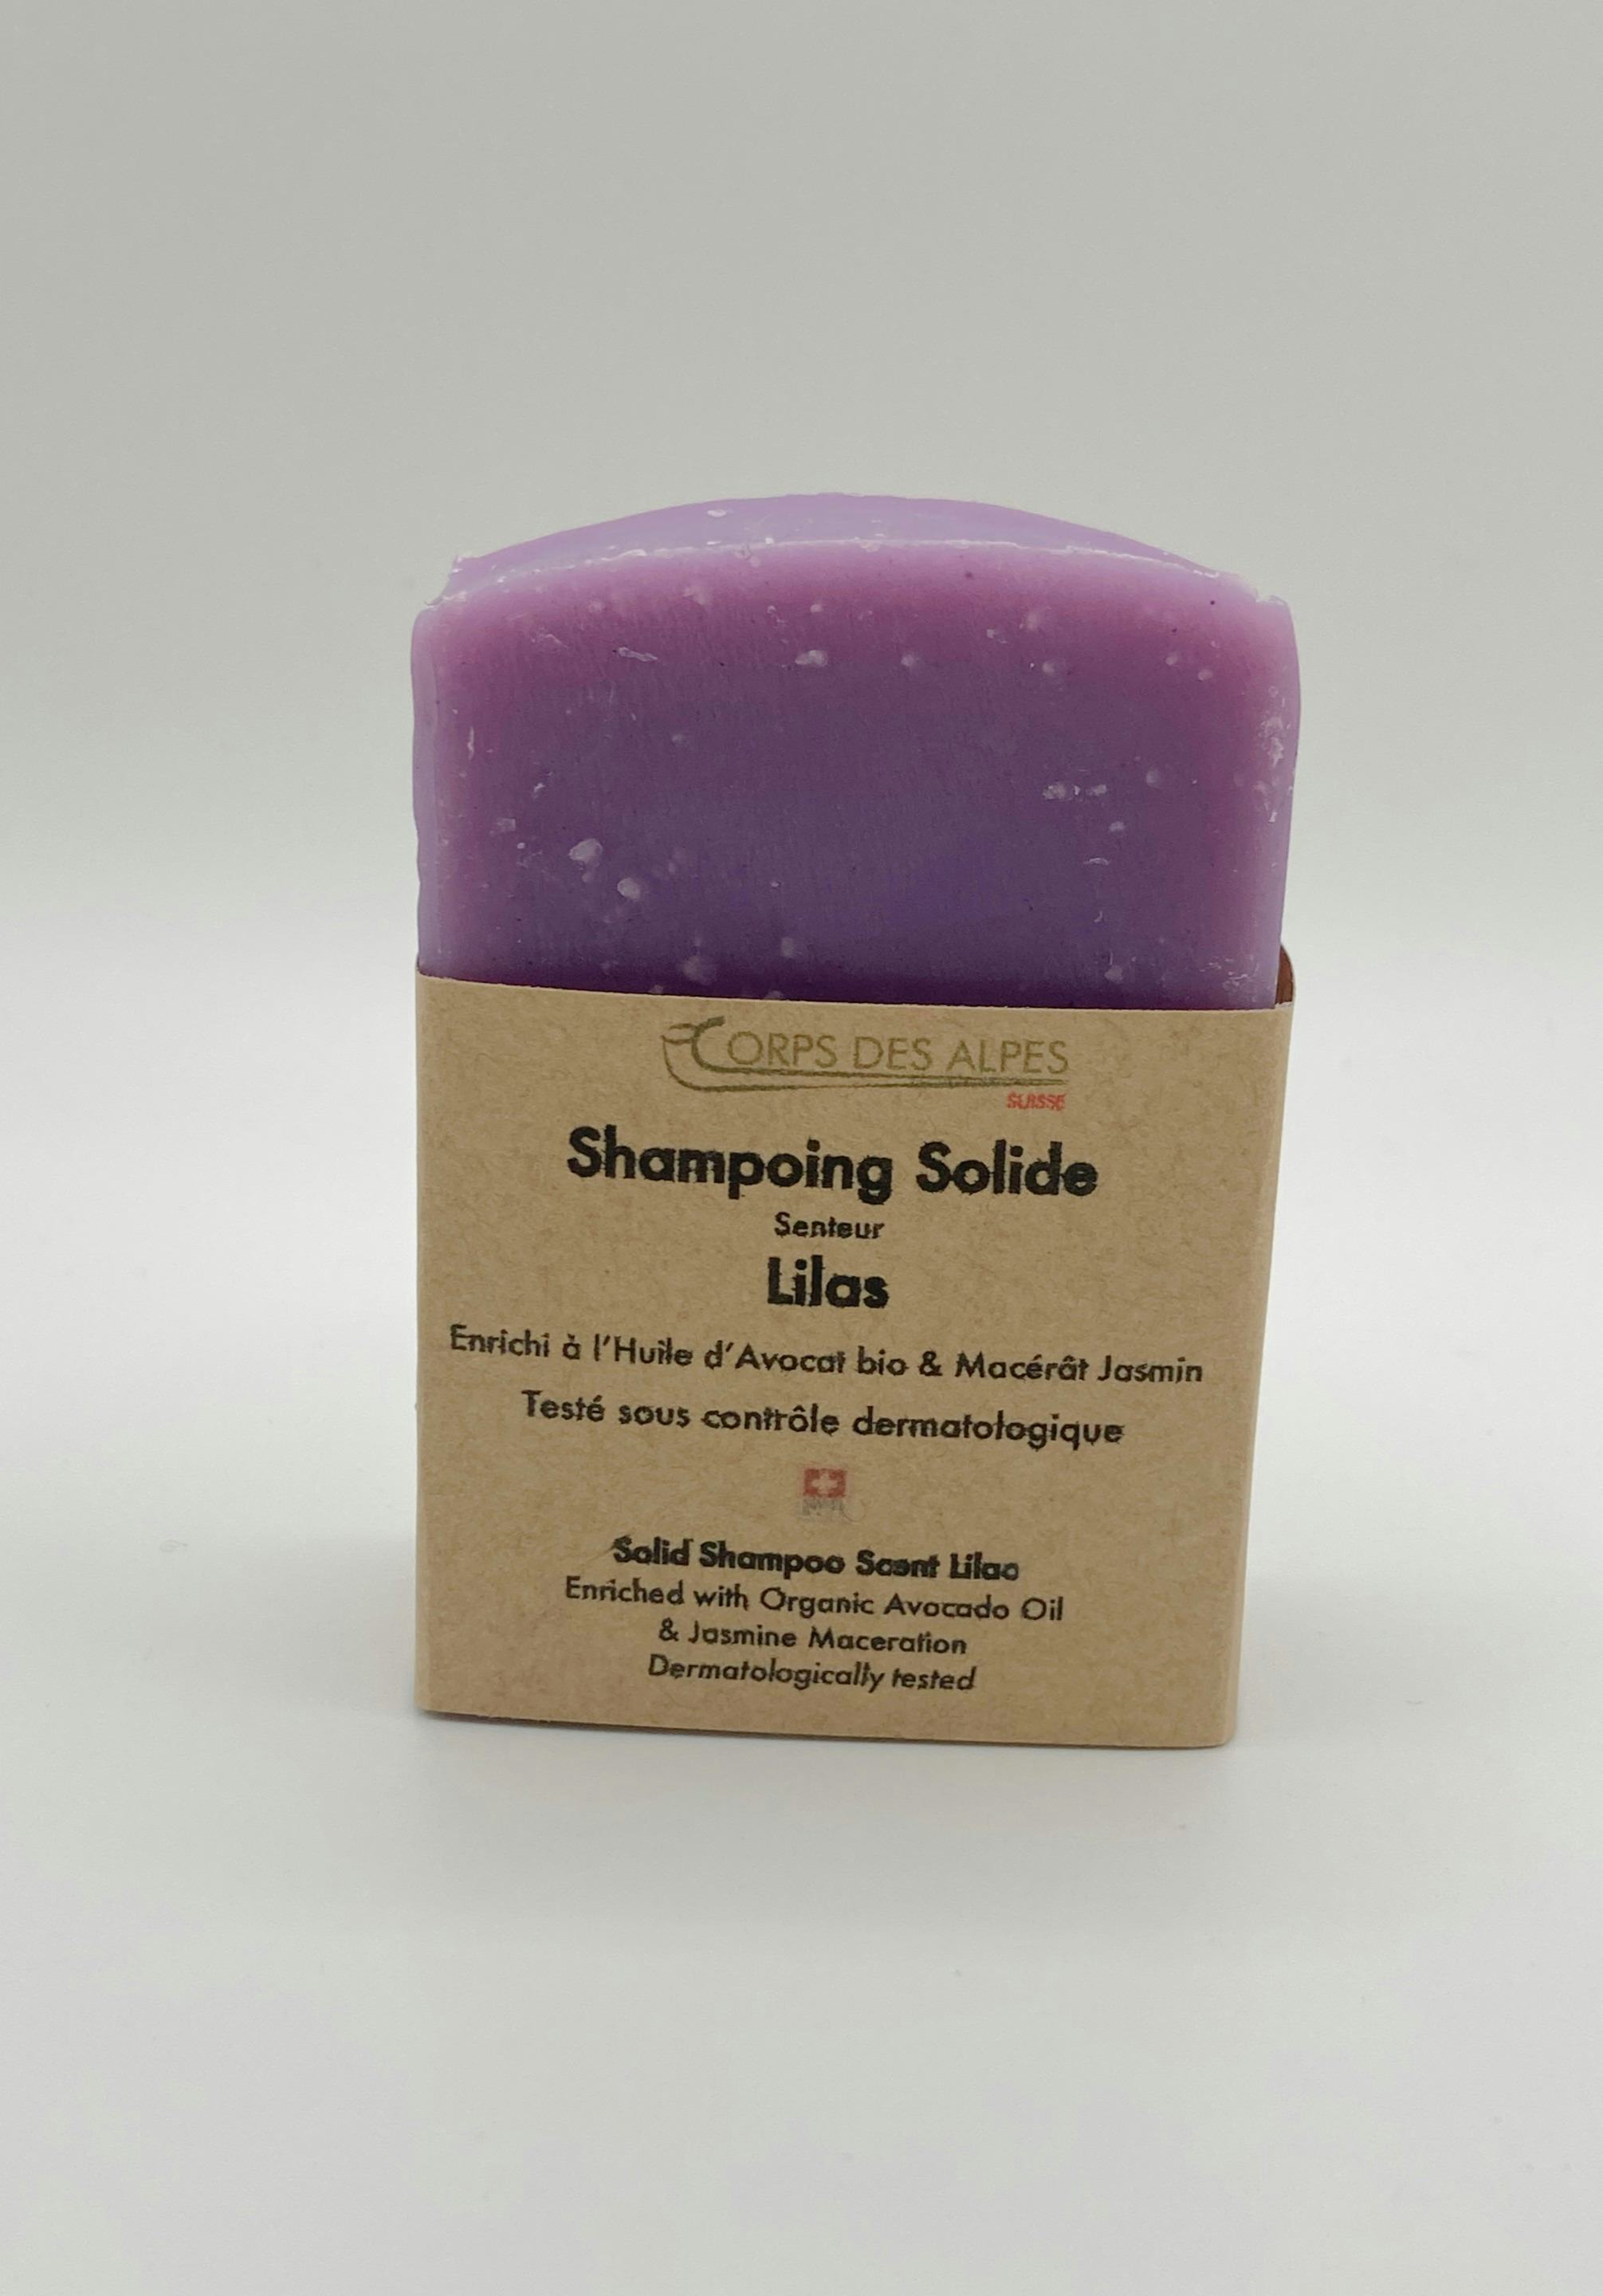 Shampoing solide senteur Lilas, handwerkliches Produkt für den Direktverkauf in der Schweiz